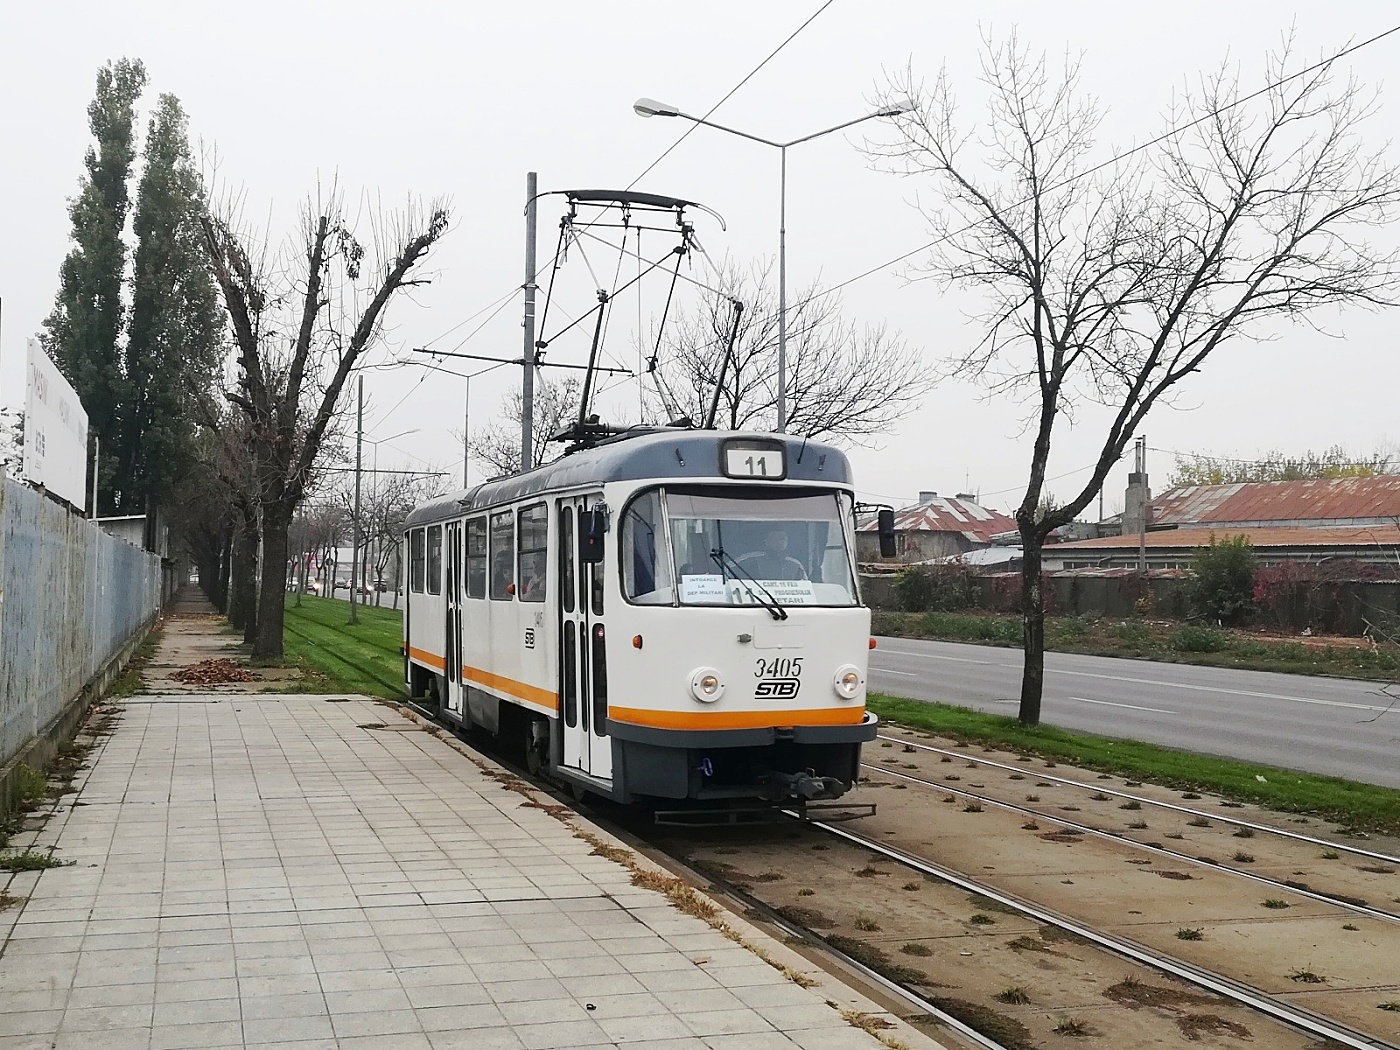 Tatra T4R #3405